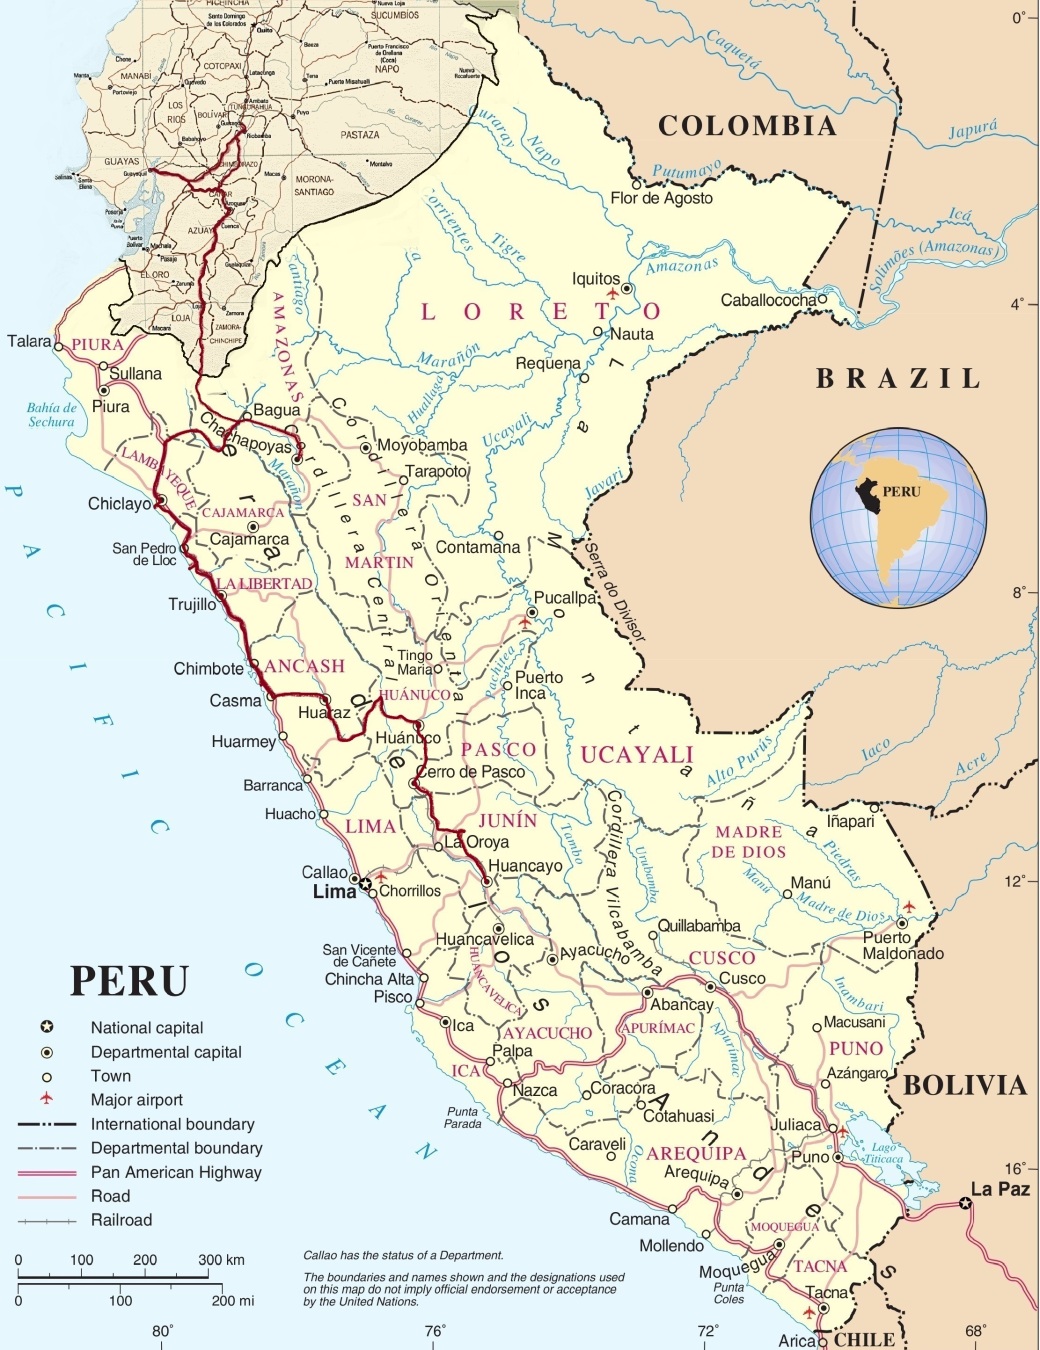 Peru 28Jan16